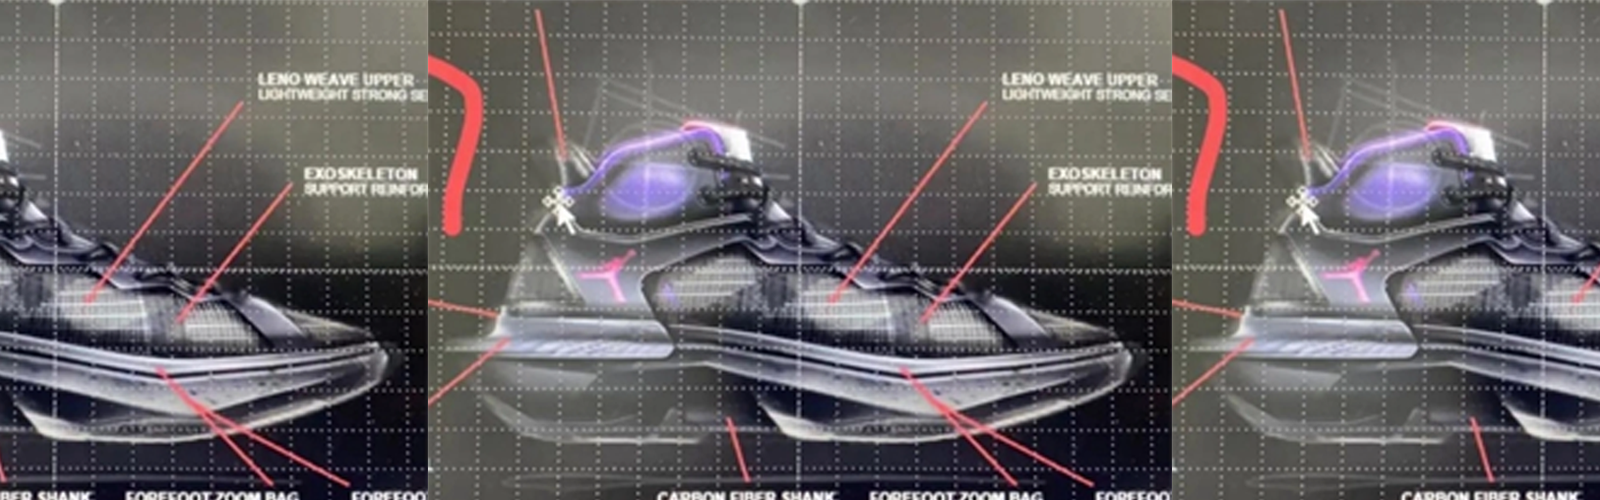 Upcoming Supreme x Air Jordan 1 Rumors Surface